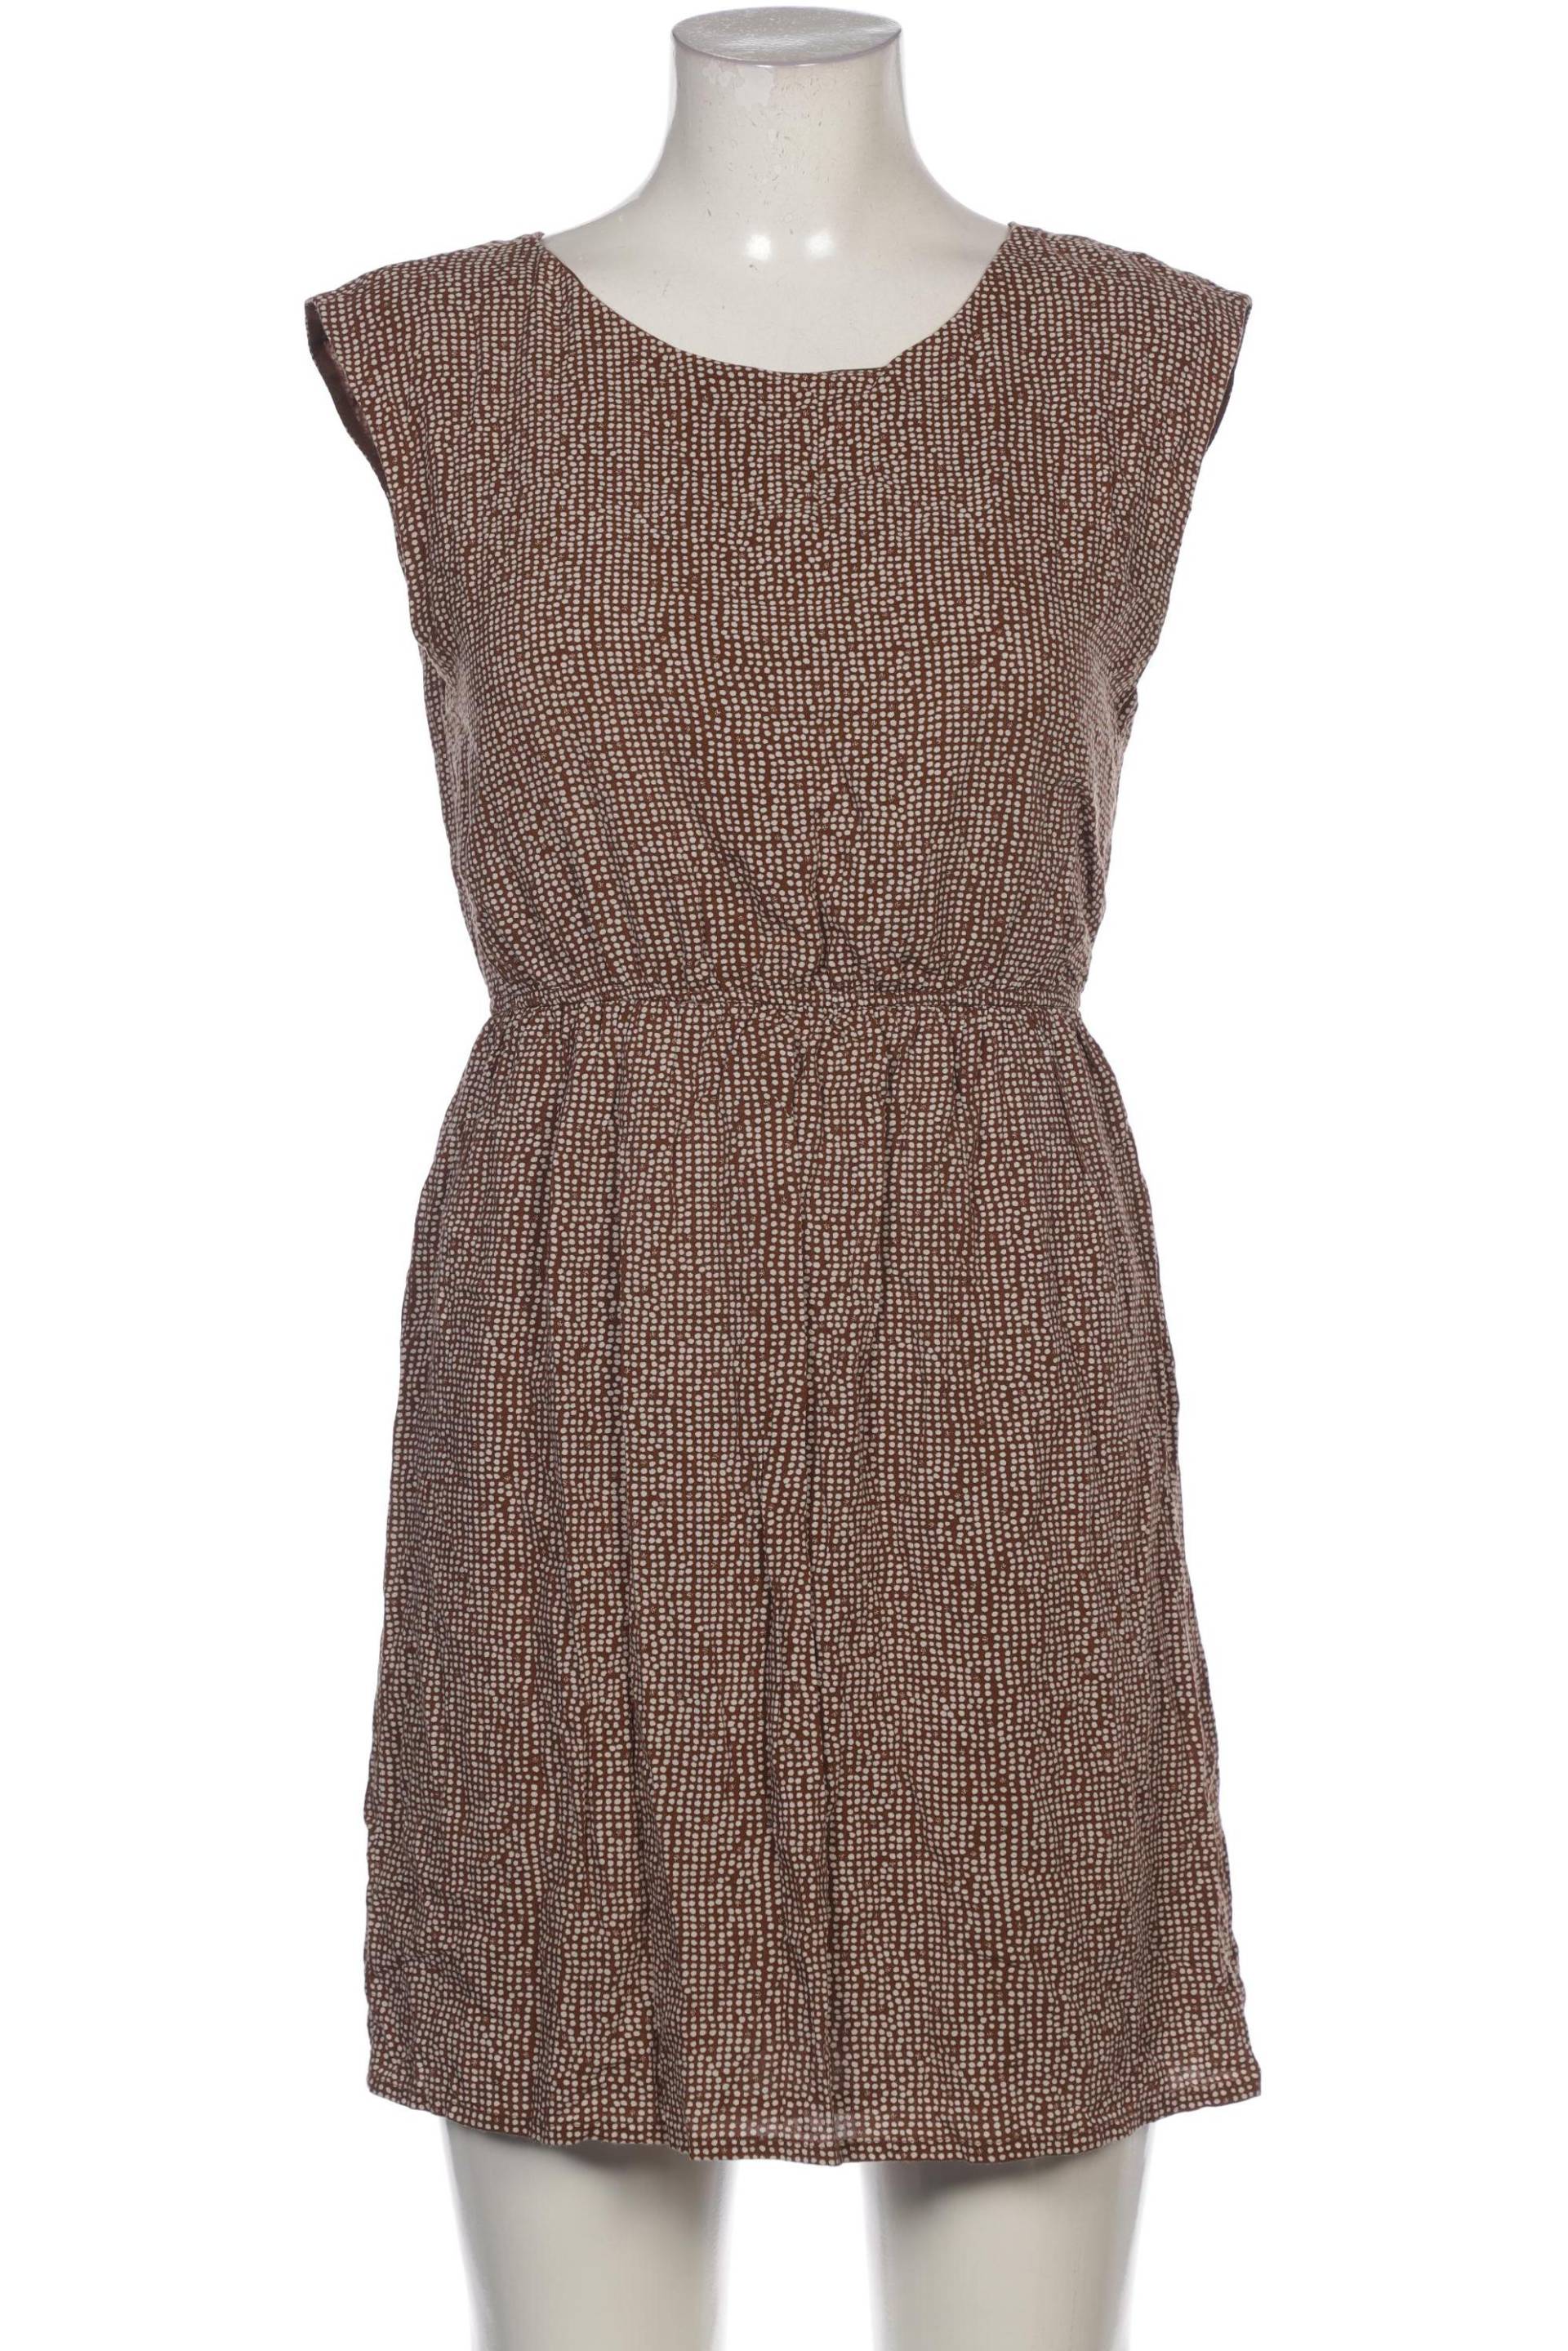 Zara Damen Kleid, braun, Gr. 38 von ZARA